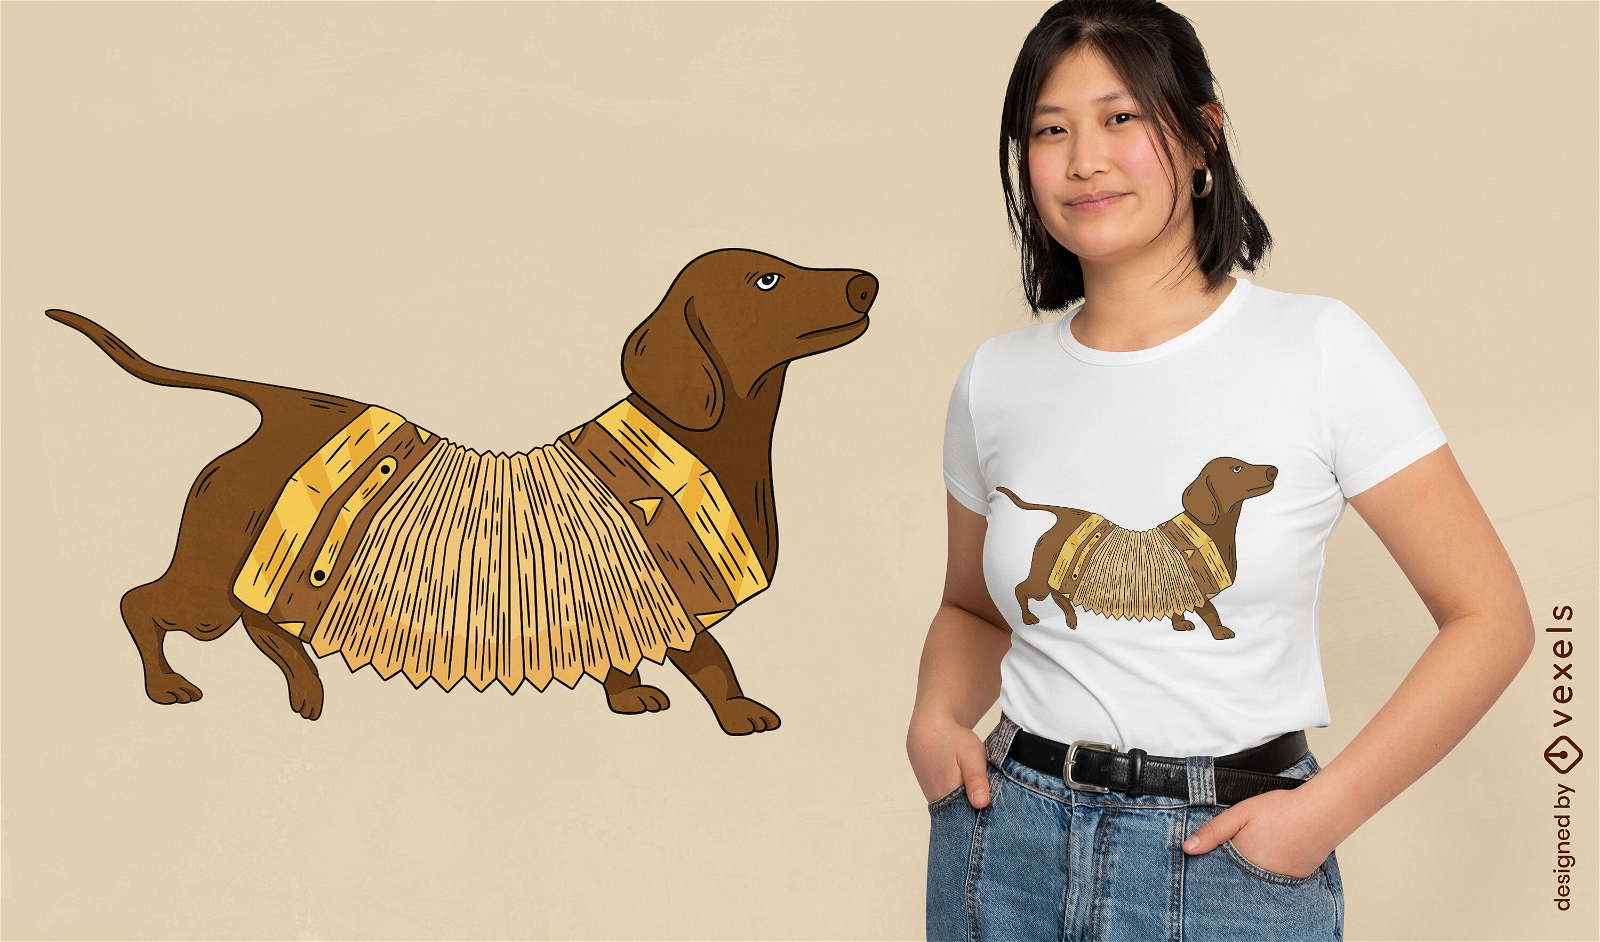 Diseño de camiseta de acordeón de perro salchicha.